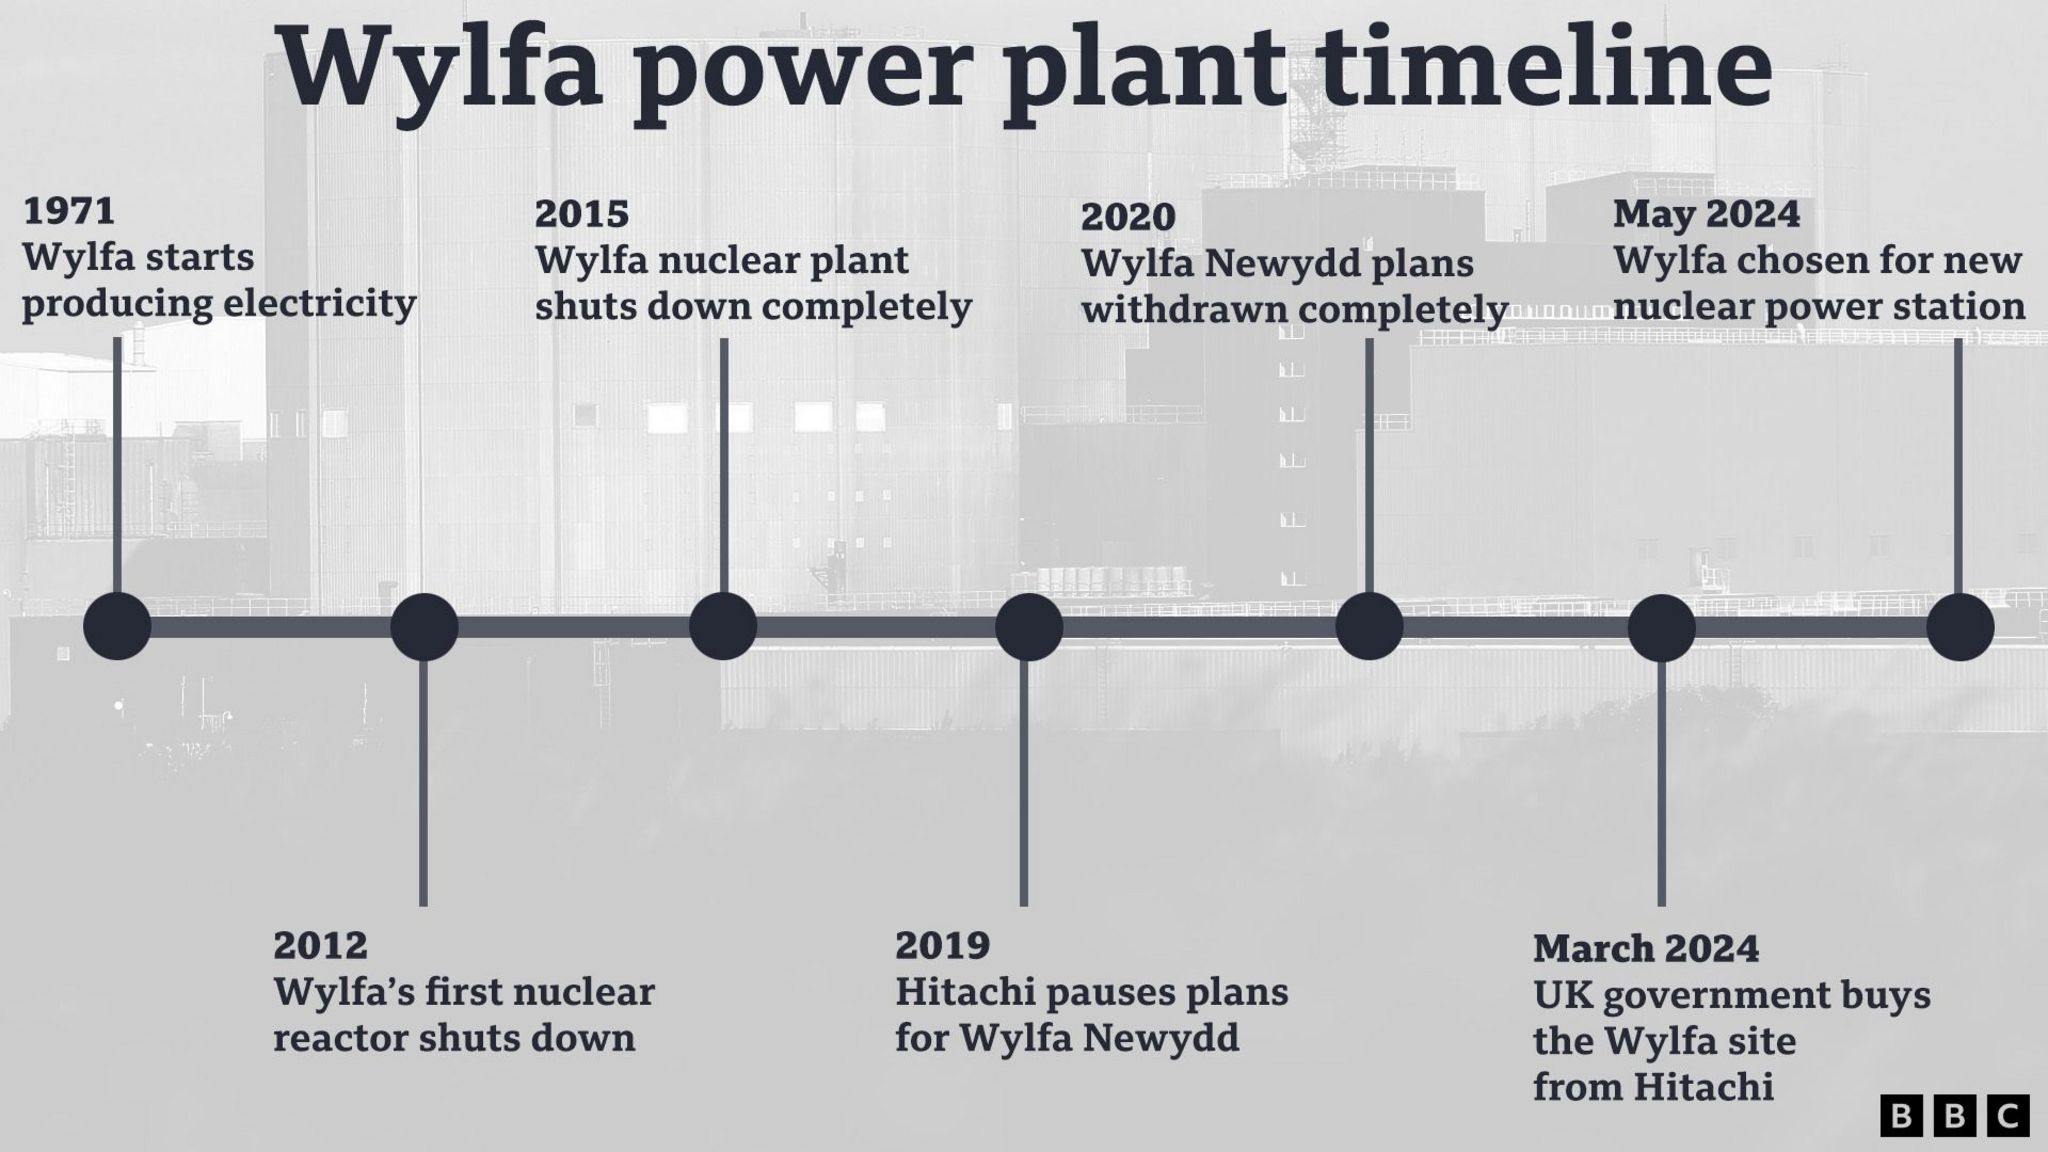 Wylfa power plant timeline